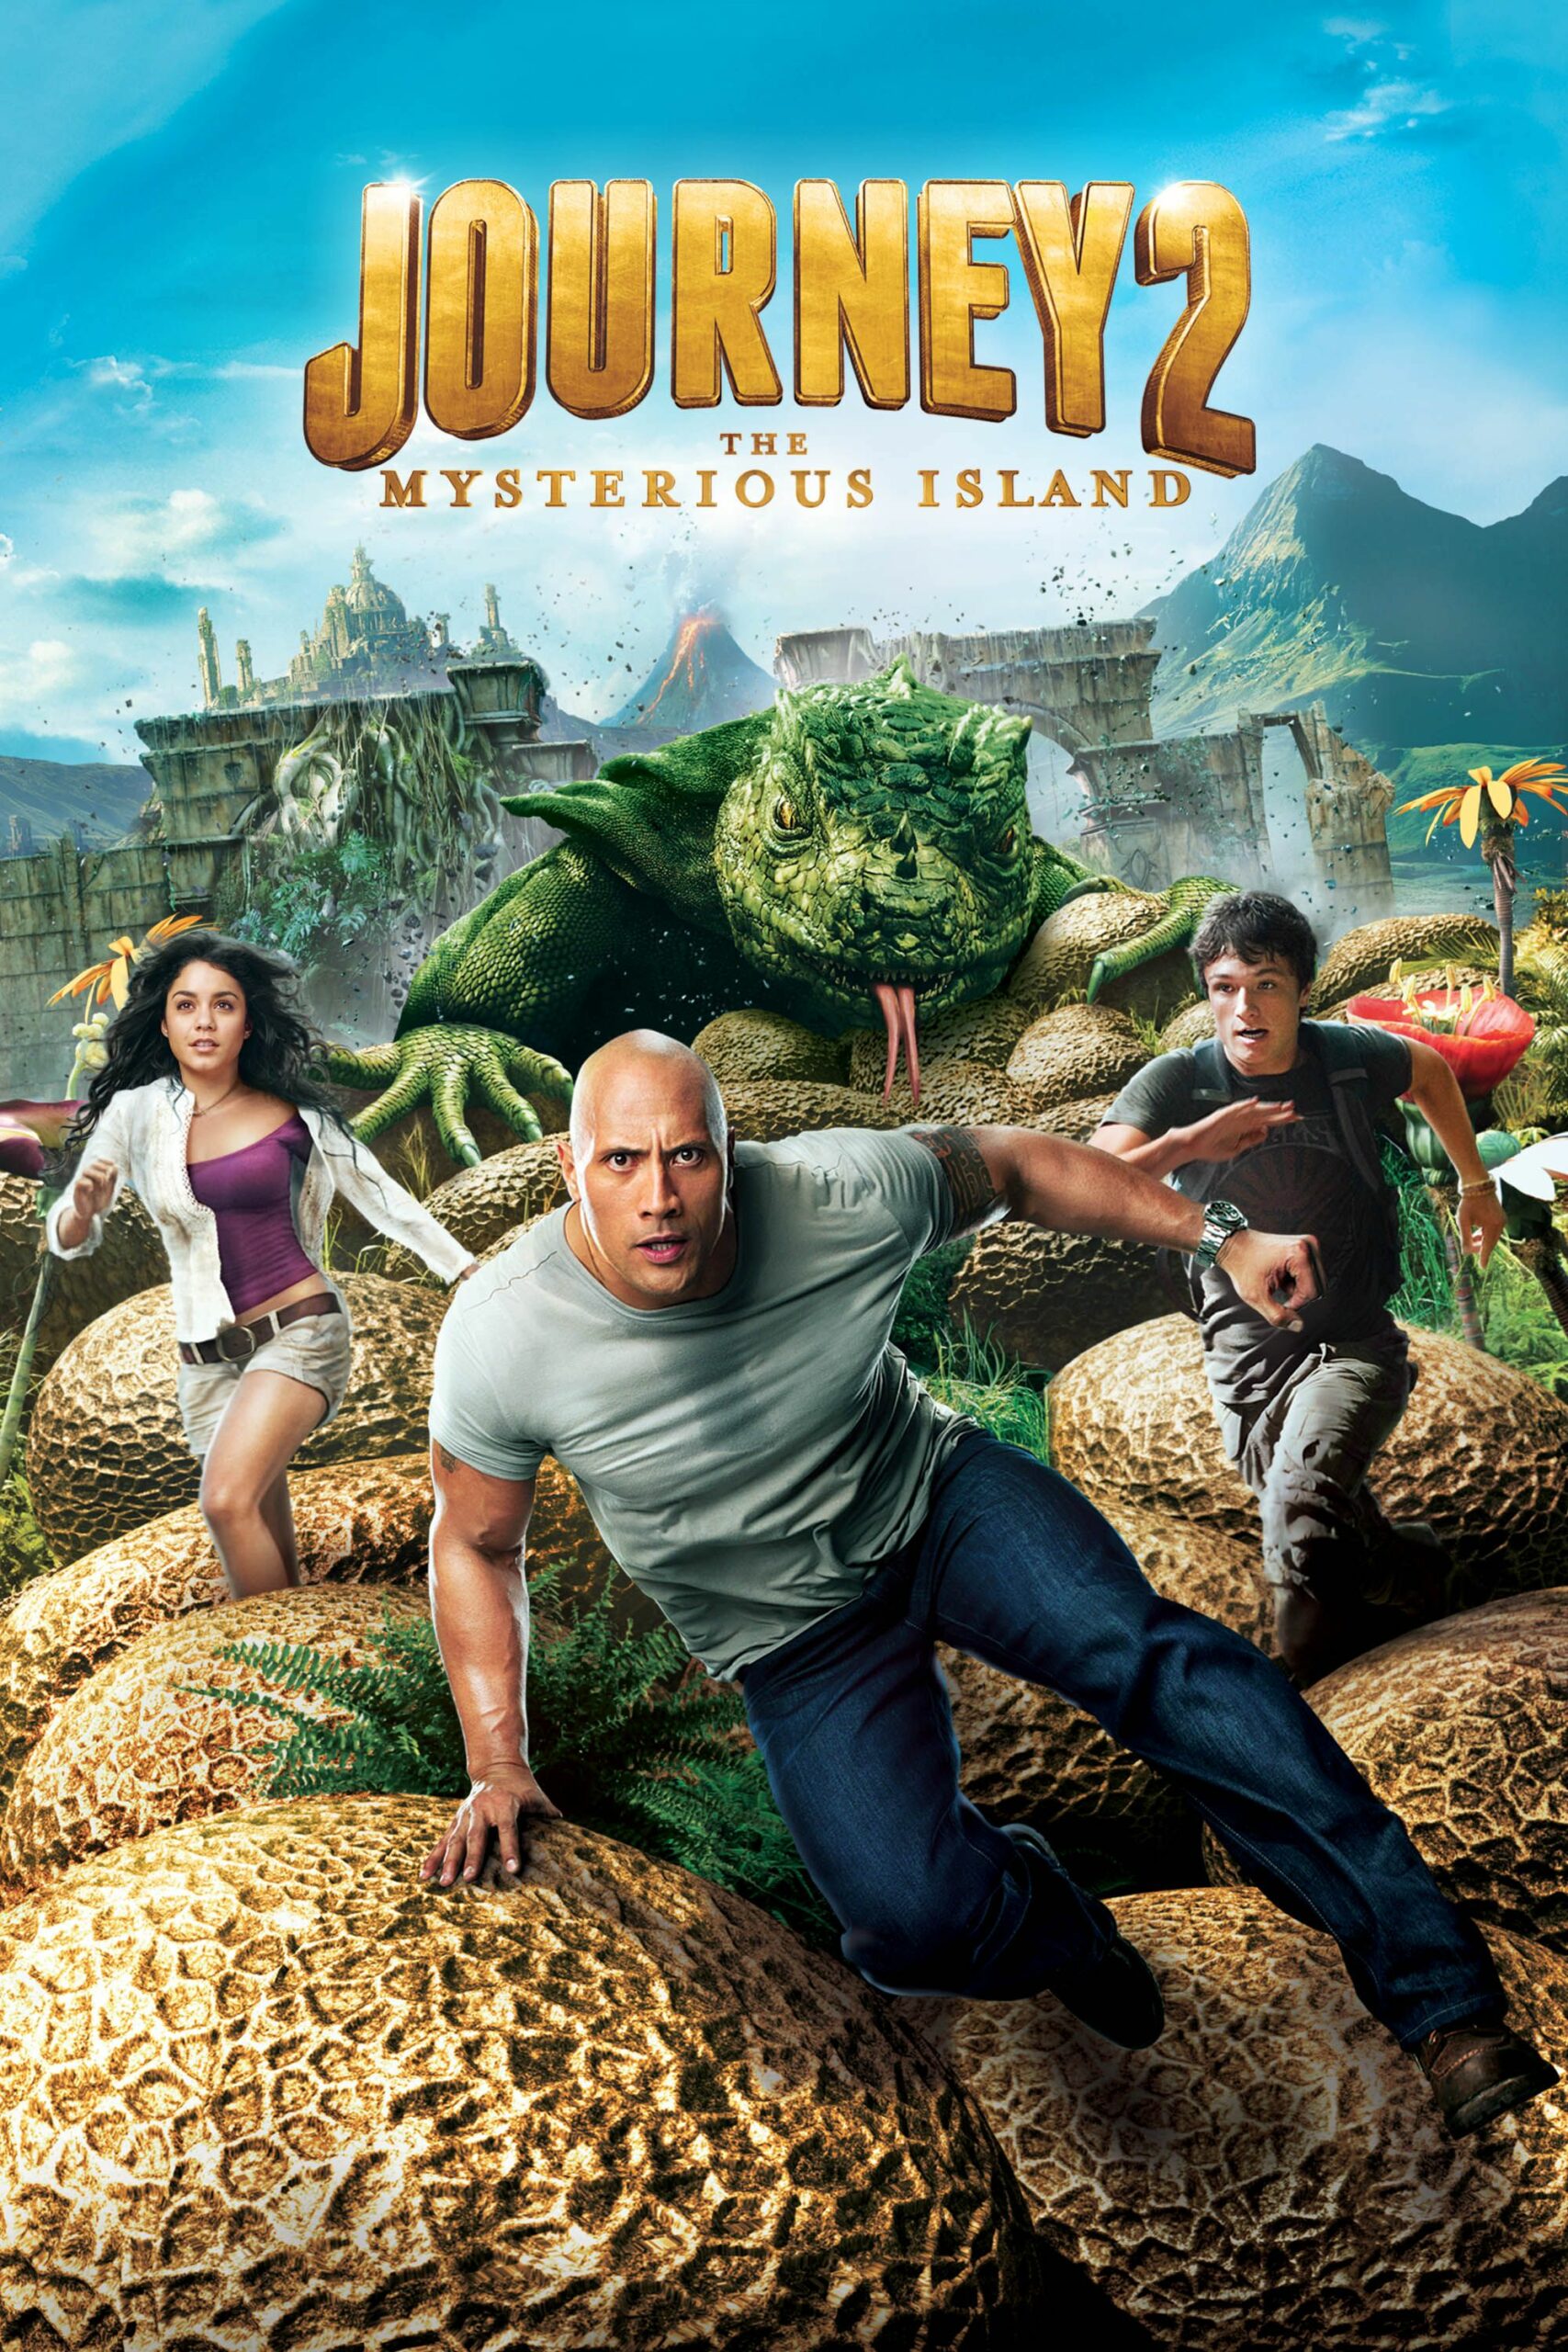 ดูหนังออนไลน์ฟรี Journey 2: The Mysterious Island (2012) เจอร์นีย์ 2 พิชิตเกาะพิศวงอัศจรรย์สุดโลก